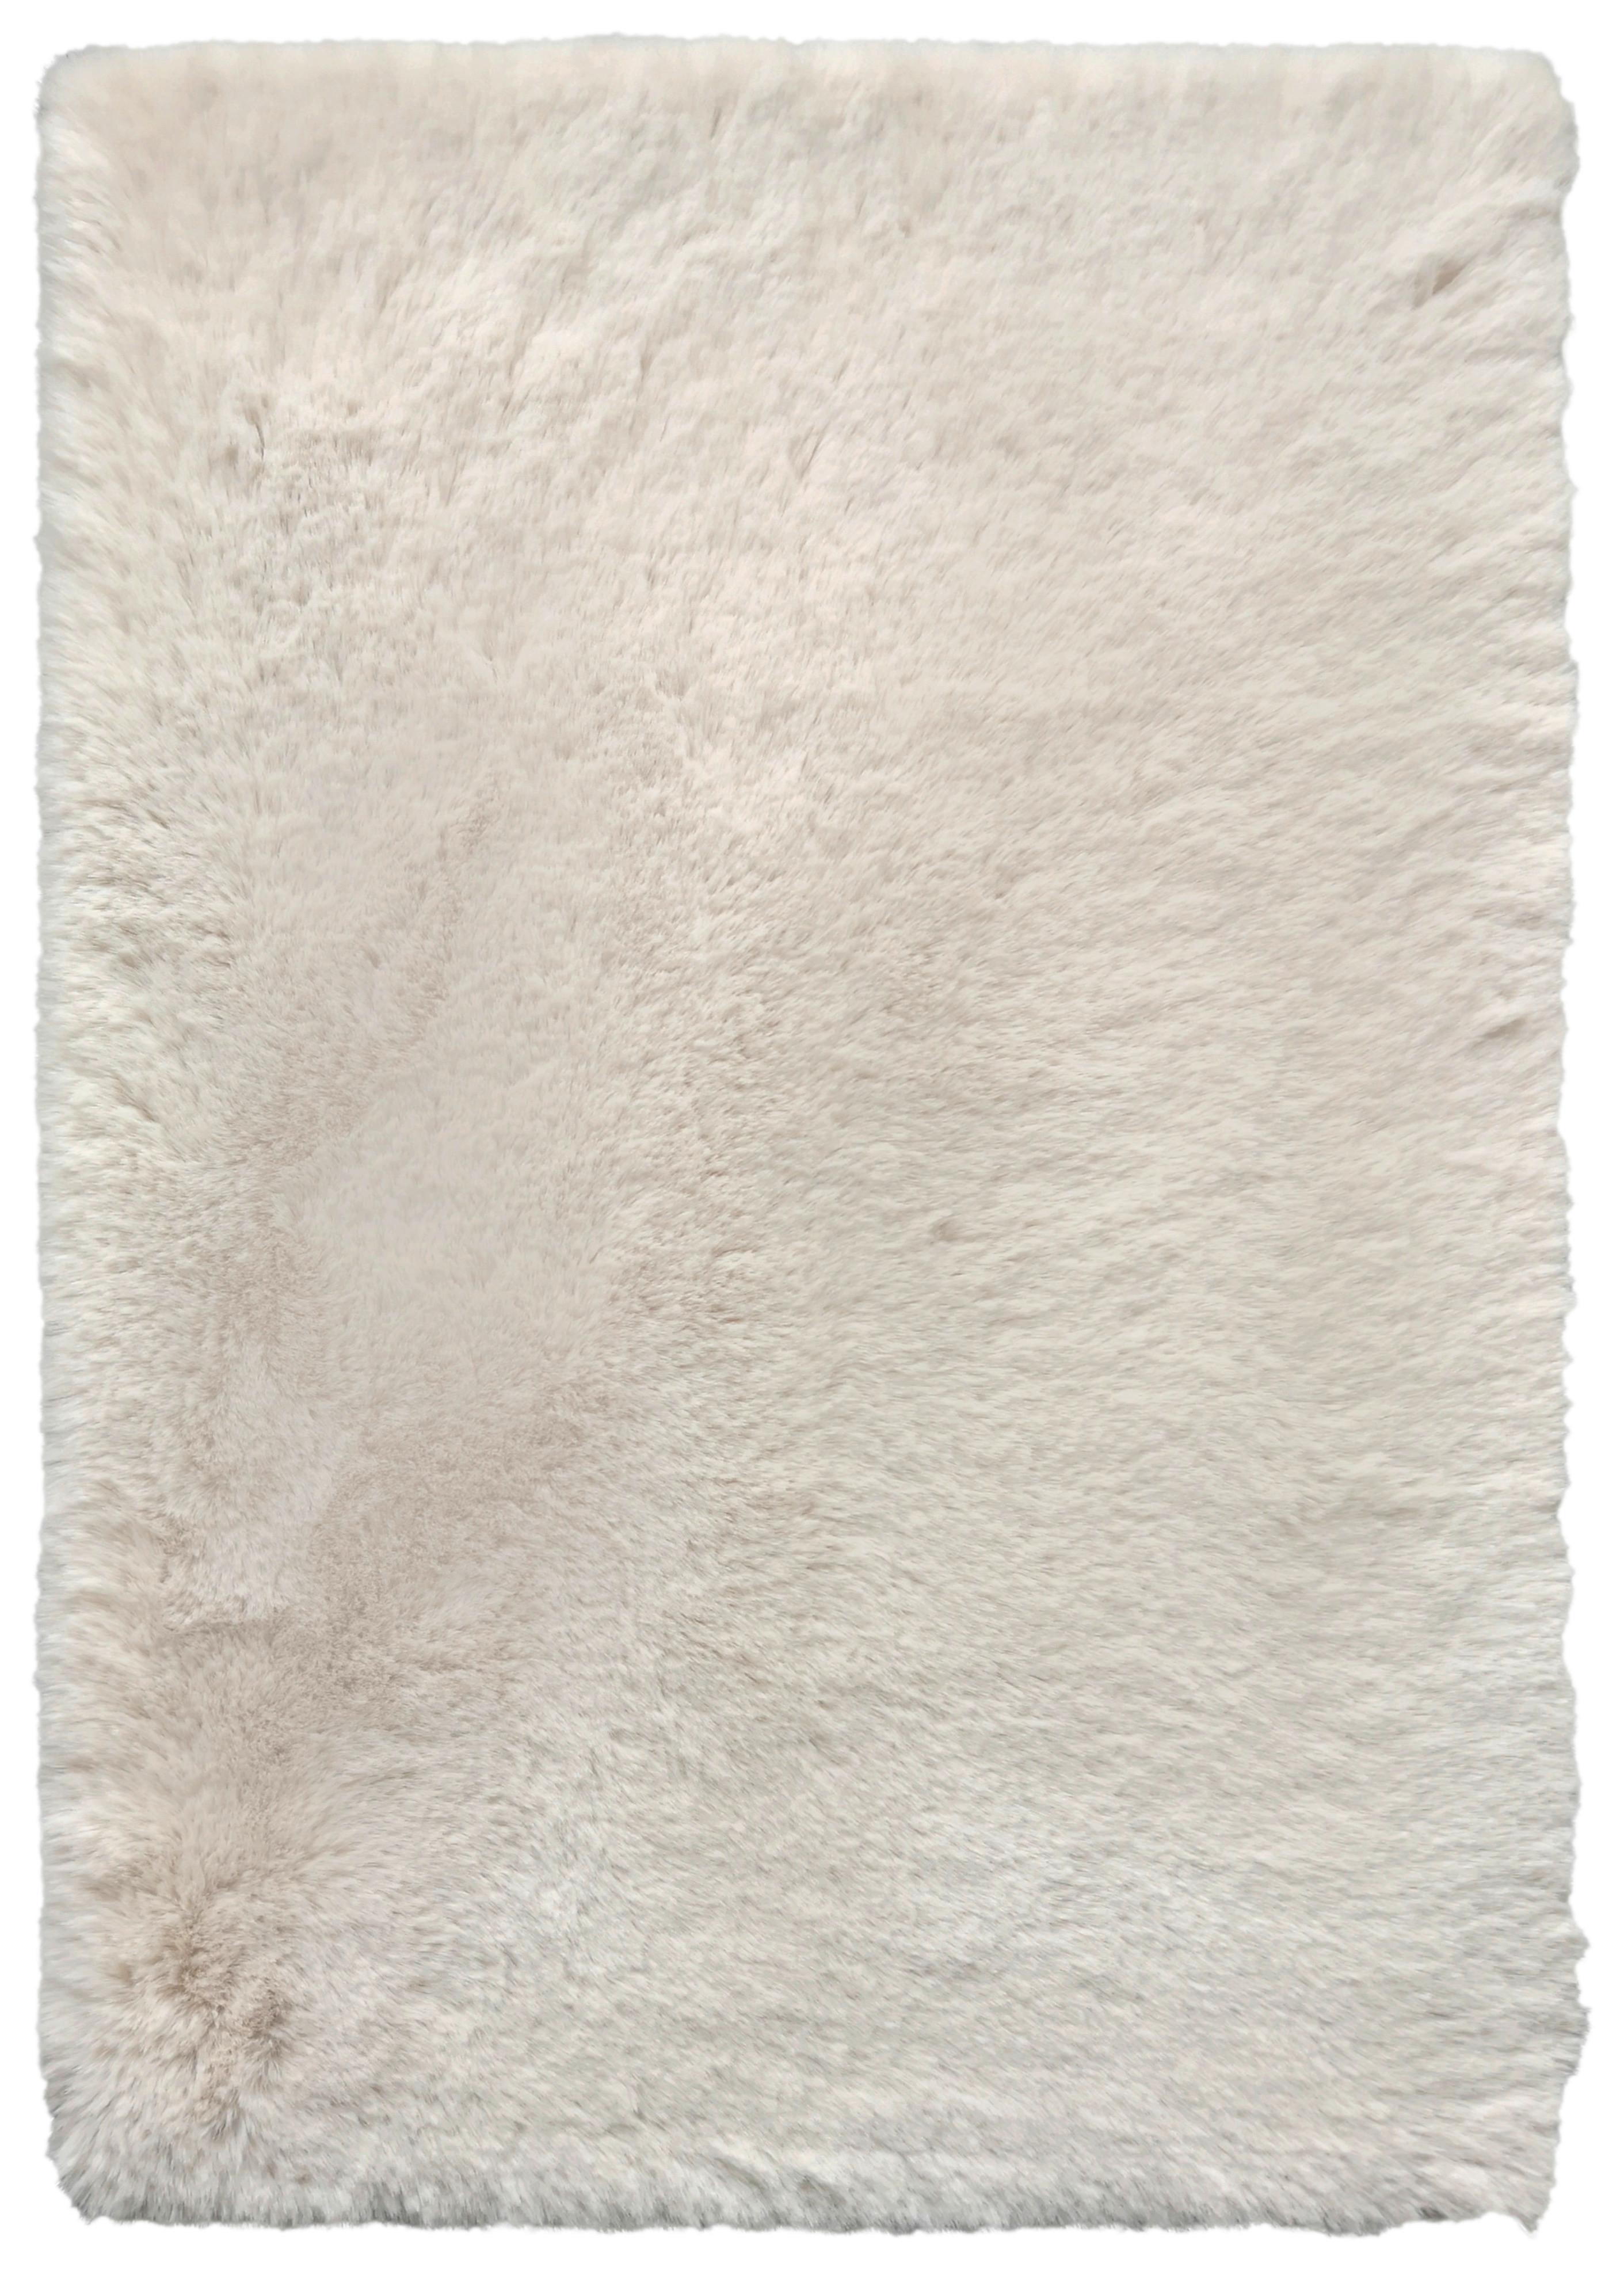 Blană artificială Caroline 2 - bej, textil (120/160cm) - Modern Living